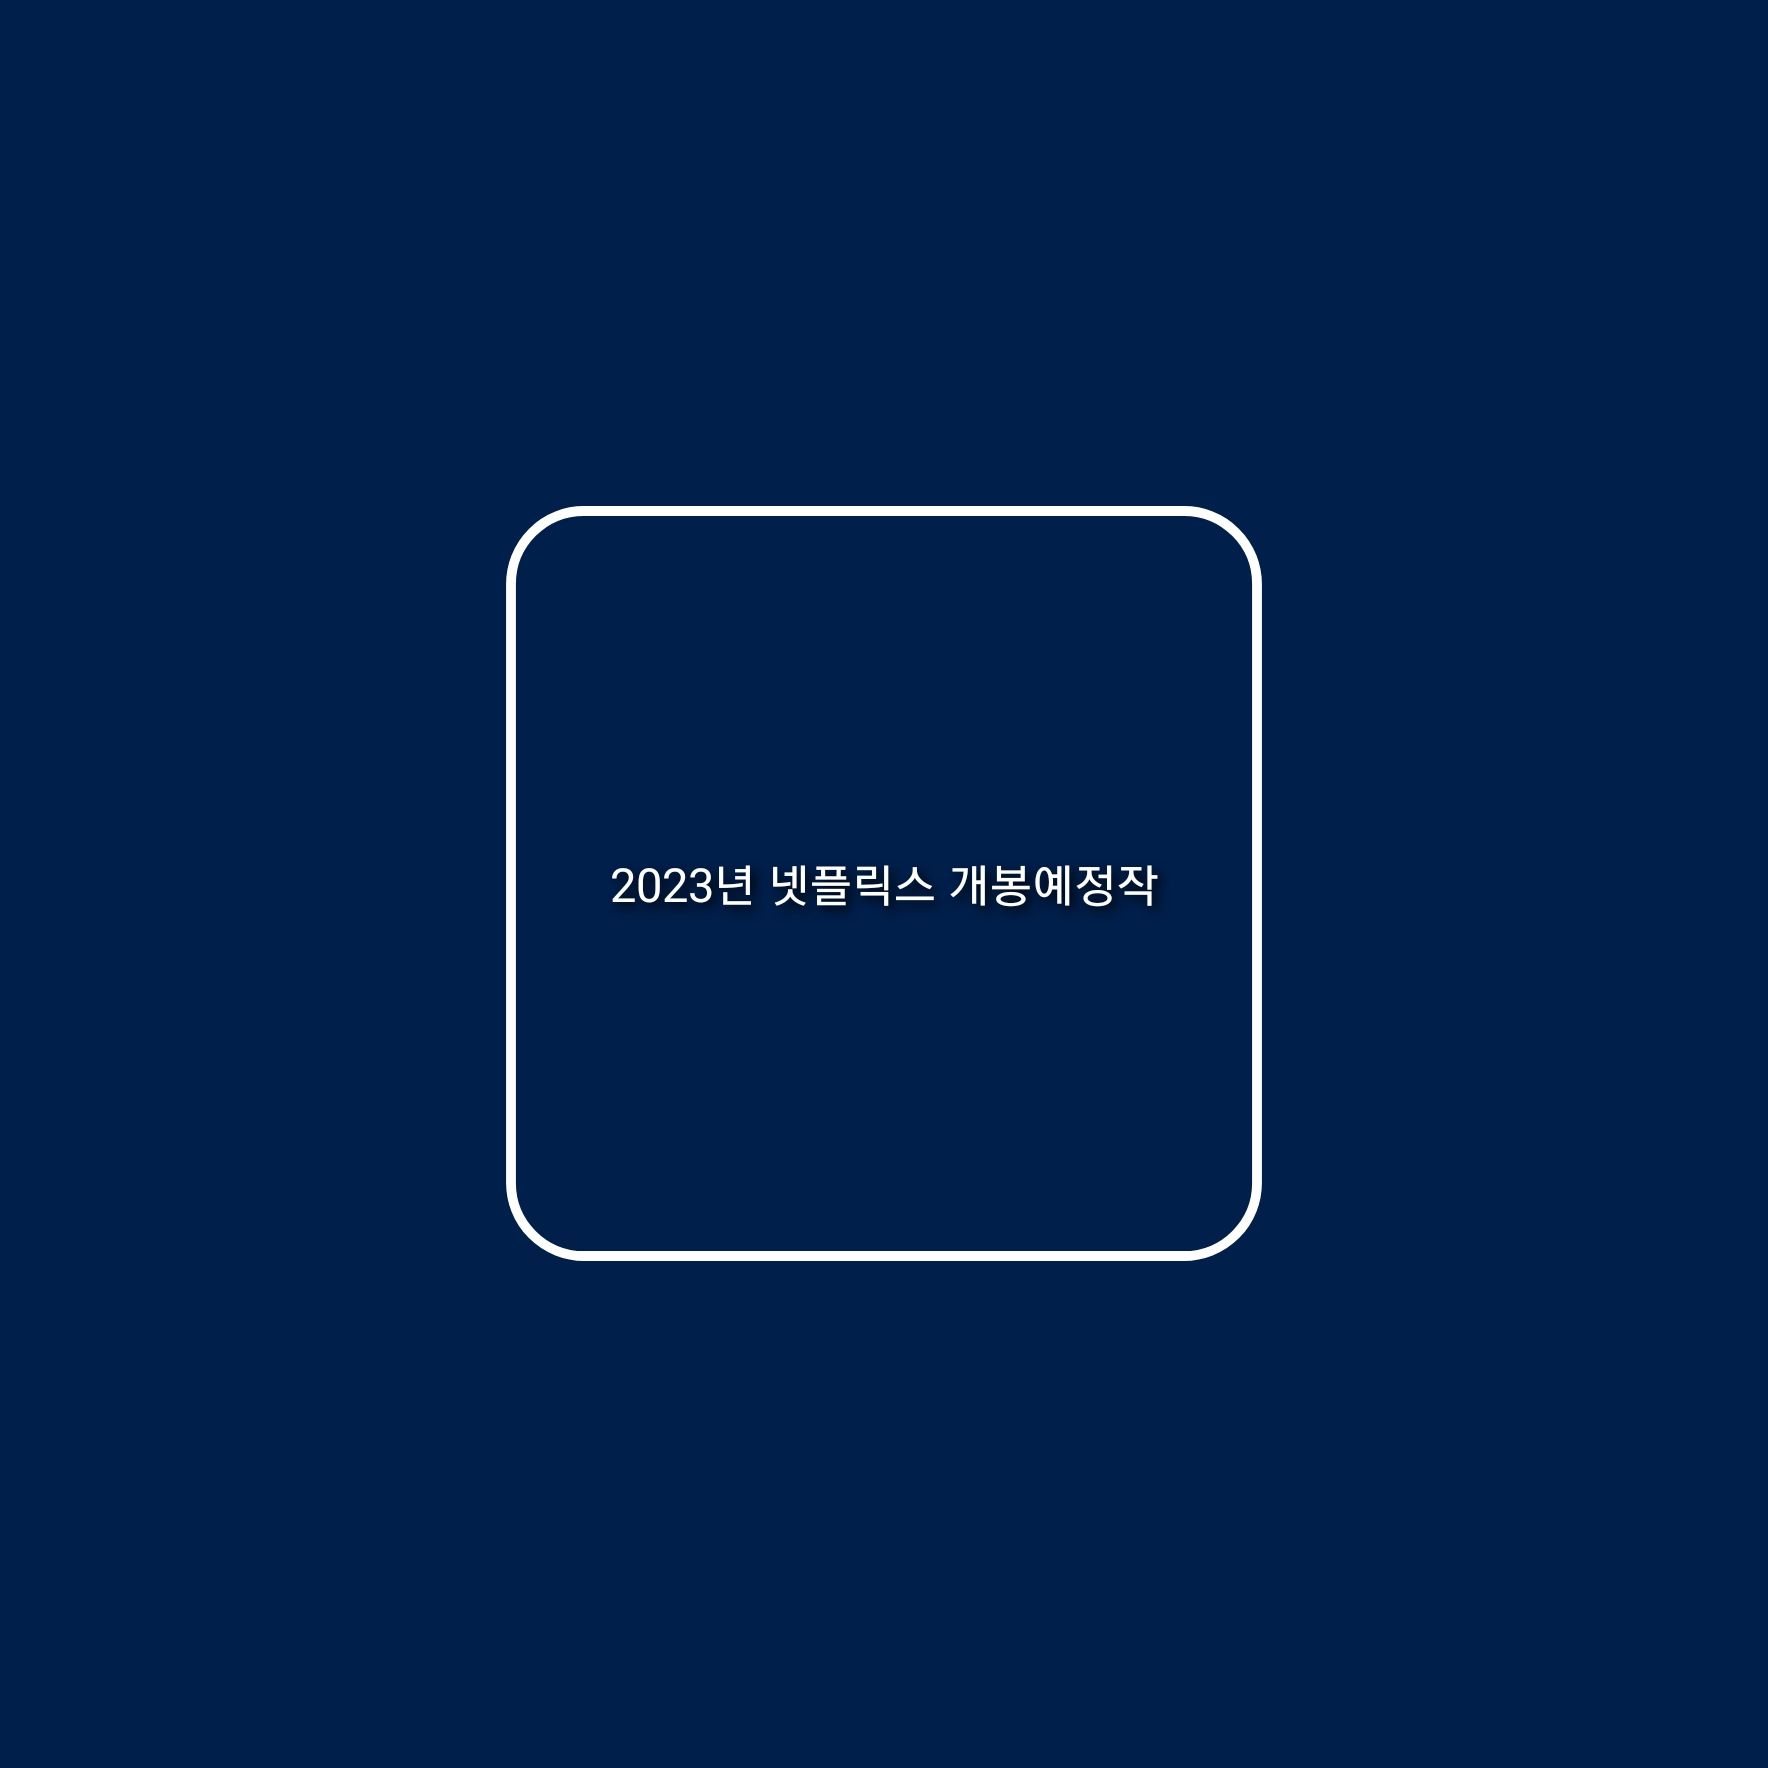 2023년 넷플릭스 개봉예정 한국영화 / 한국드라마